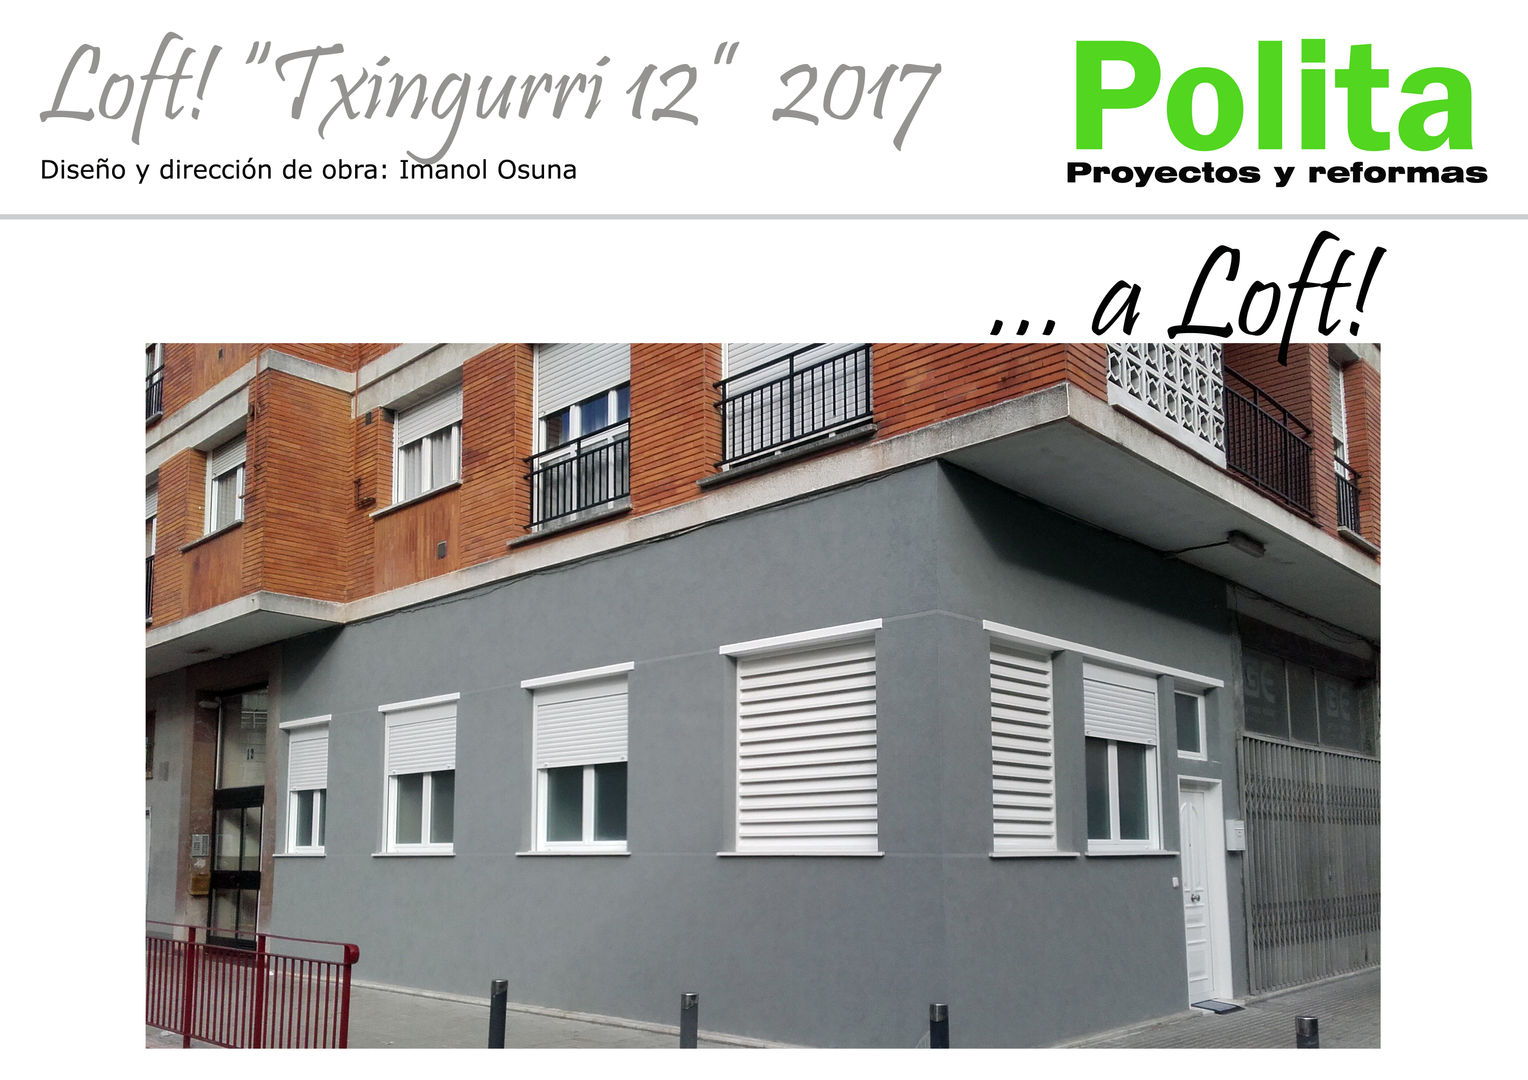 LOFT "txingurri 12" _ 2016, POLITA proyectos y reformas POLITA proyectos y reformas Casas de estilo minimalista